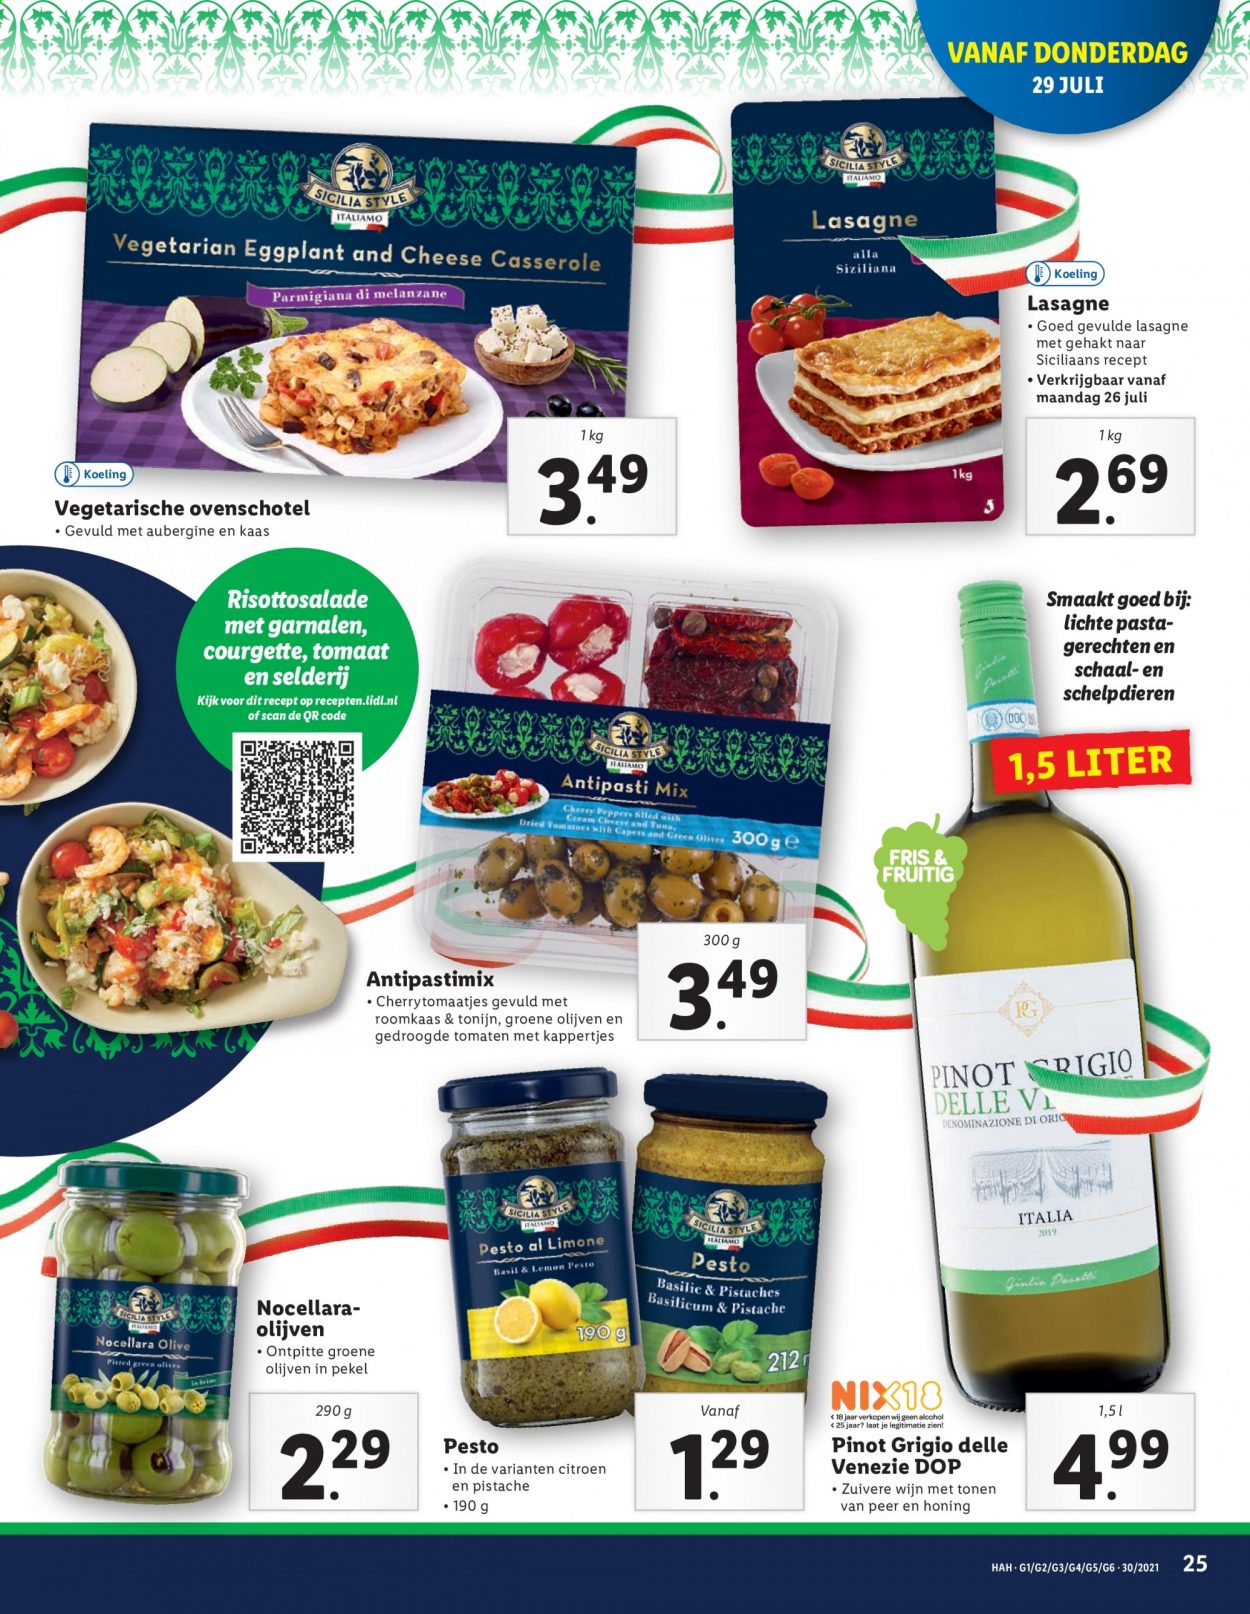 thumbnail - Lidl-aanbieding - 26-7-2021 - 1-8-2021 -  producten in de aanbieding - Italiamo, tomaten, courgette, lasagne, ovenschotel, groene olijven, kaas, kappertjes, olijven, gedroogde tomaten, basilicum, wijn. Pagina 25.